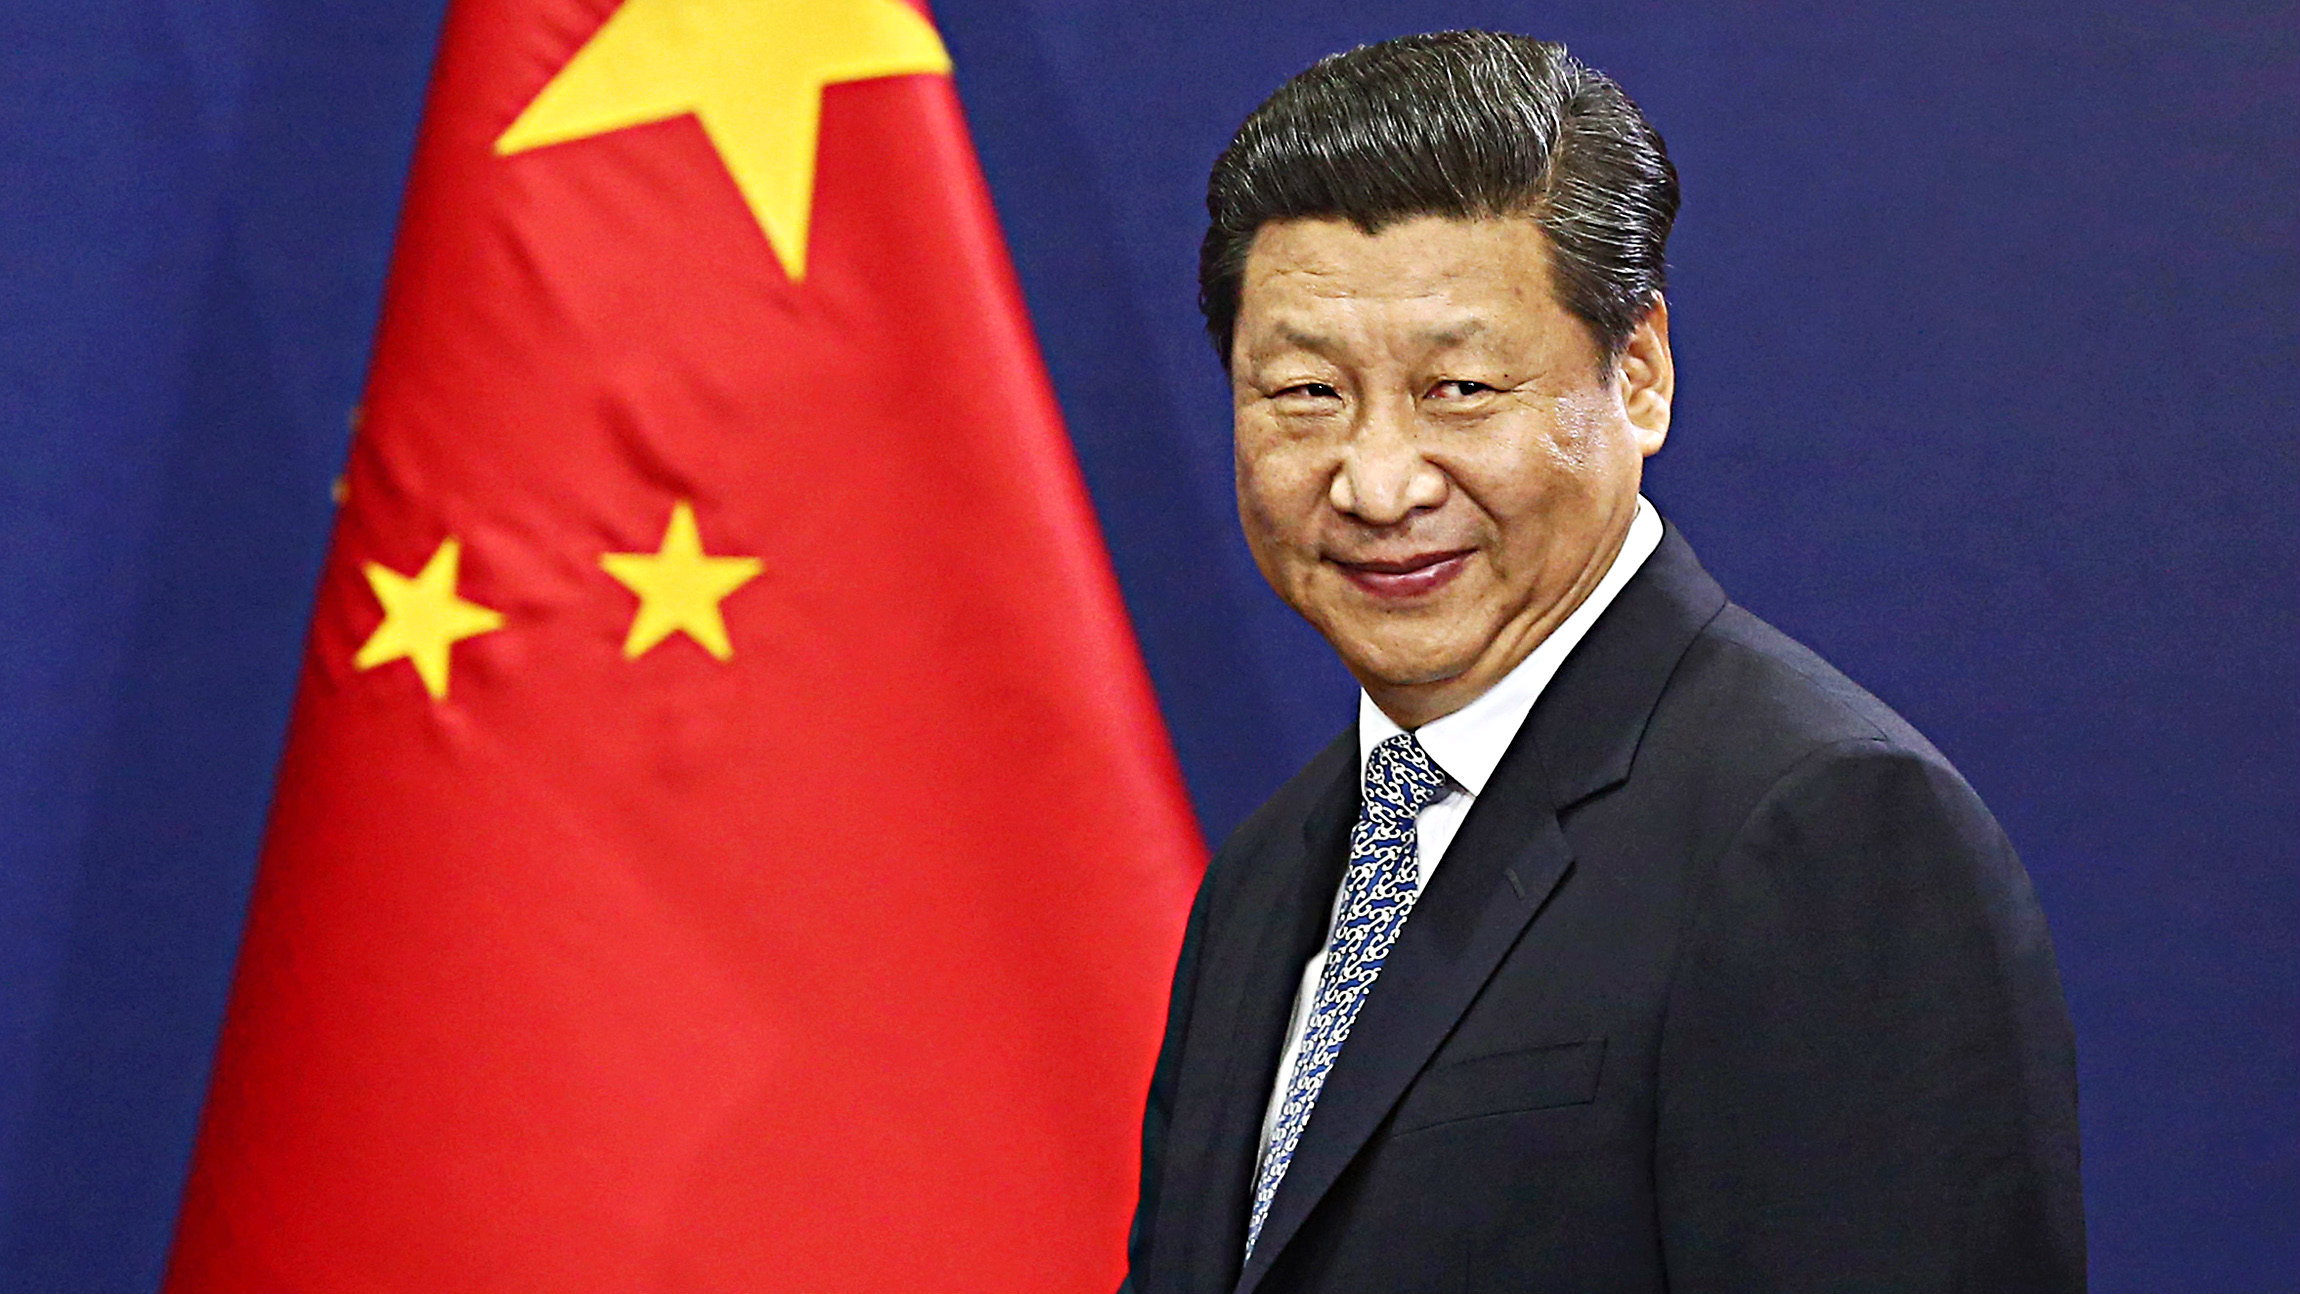 Chủ tịch Trung Quốc Tập Cận Bình sẽ thực hiện chuyến thăm chính thức Việt Nam vào 2 ngày 5 và 6.11.2015 - Ảnh: Bloomberg